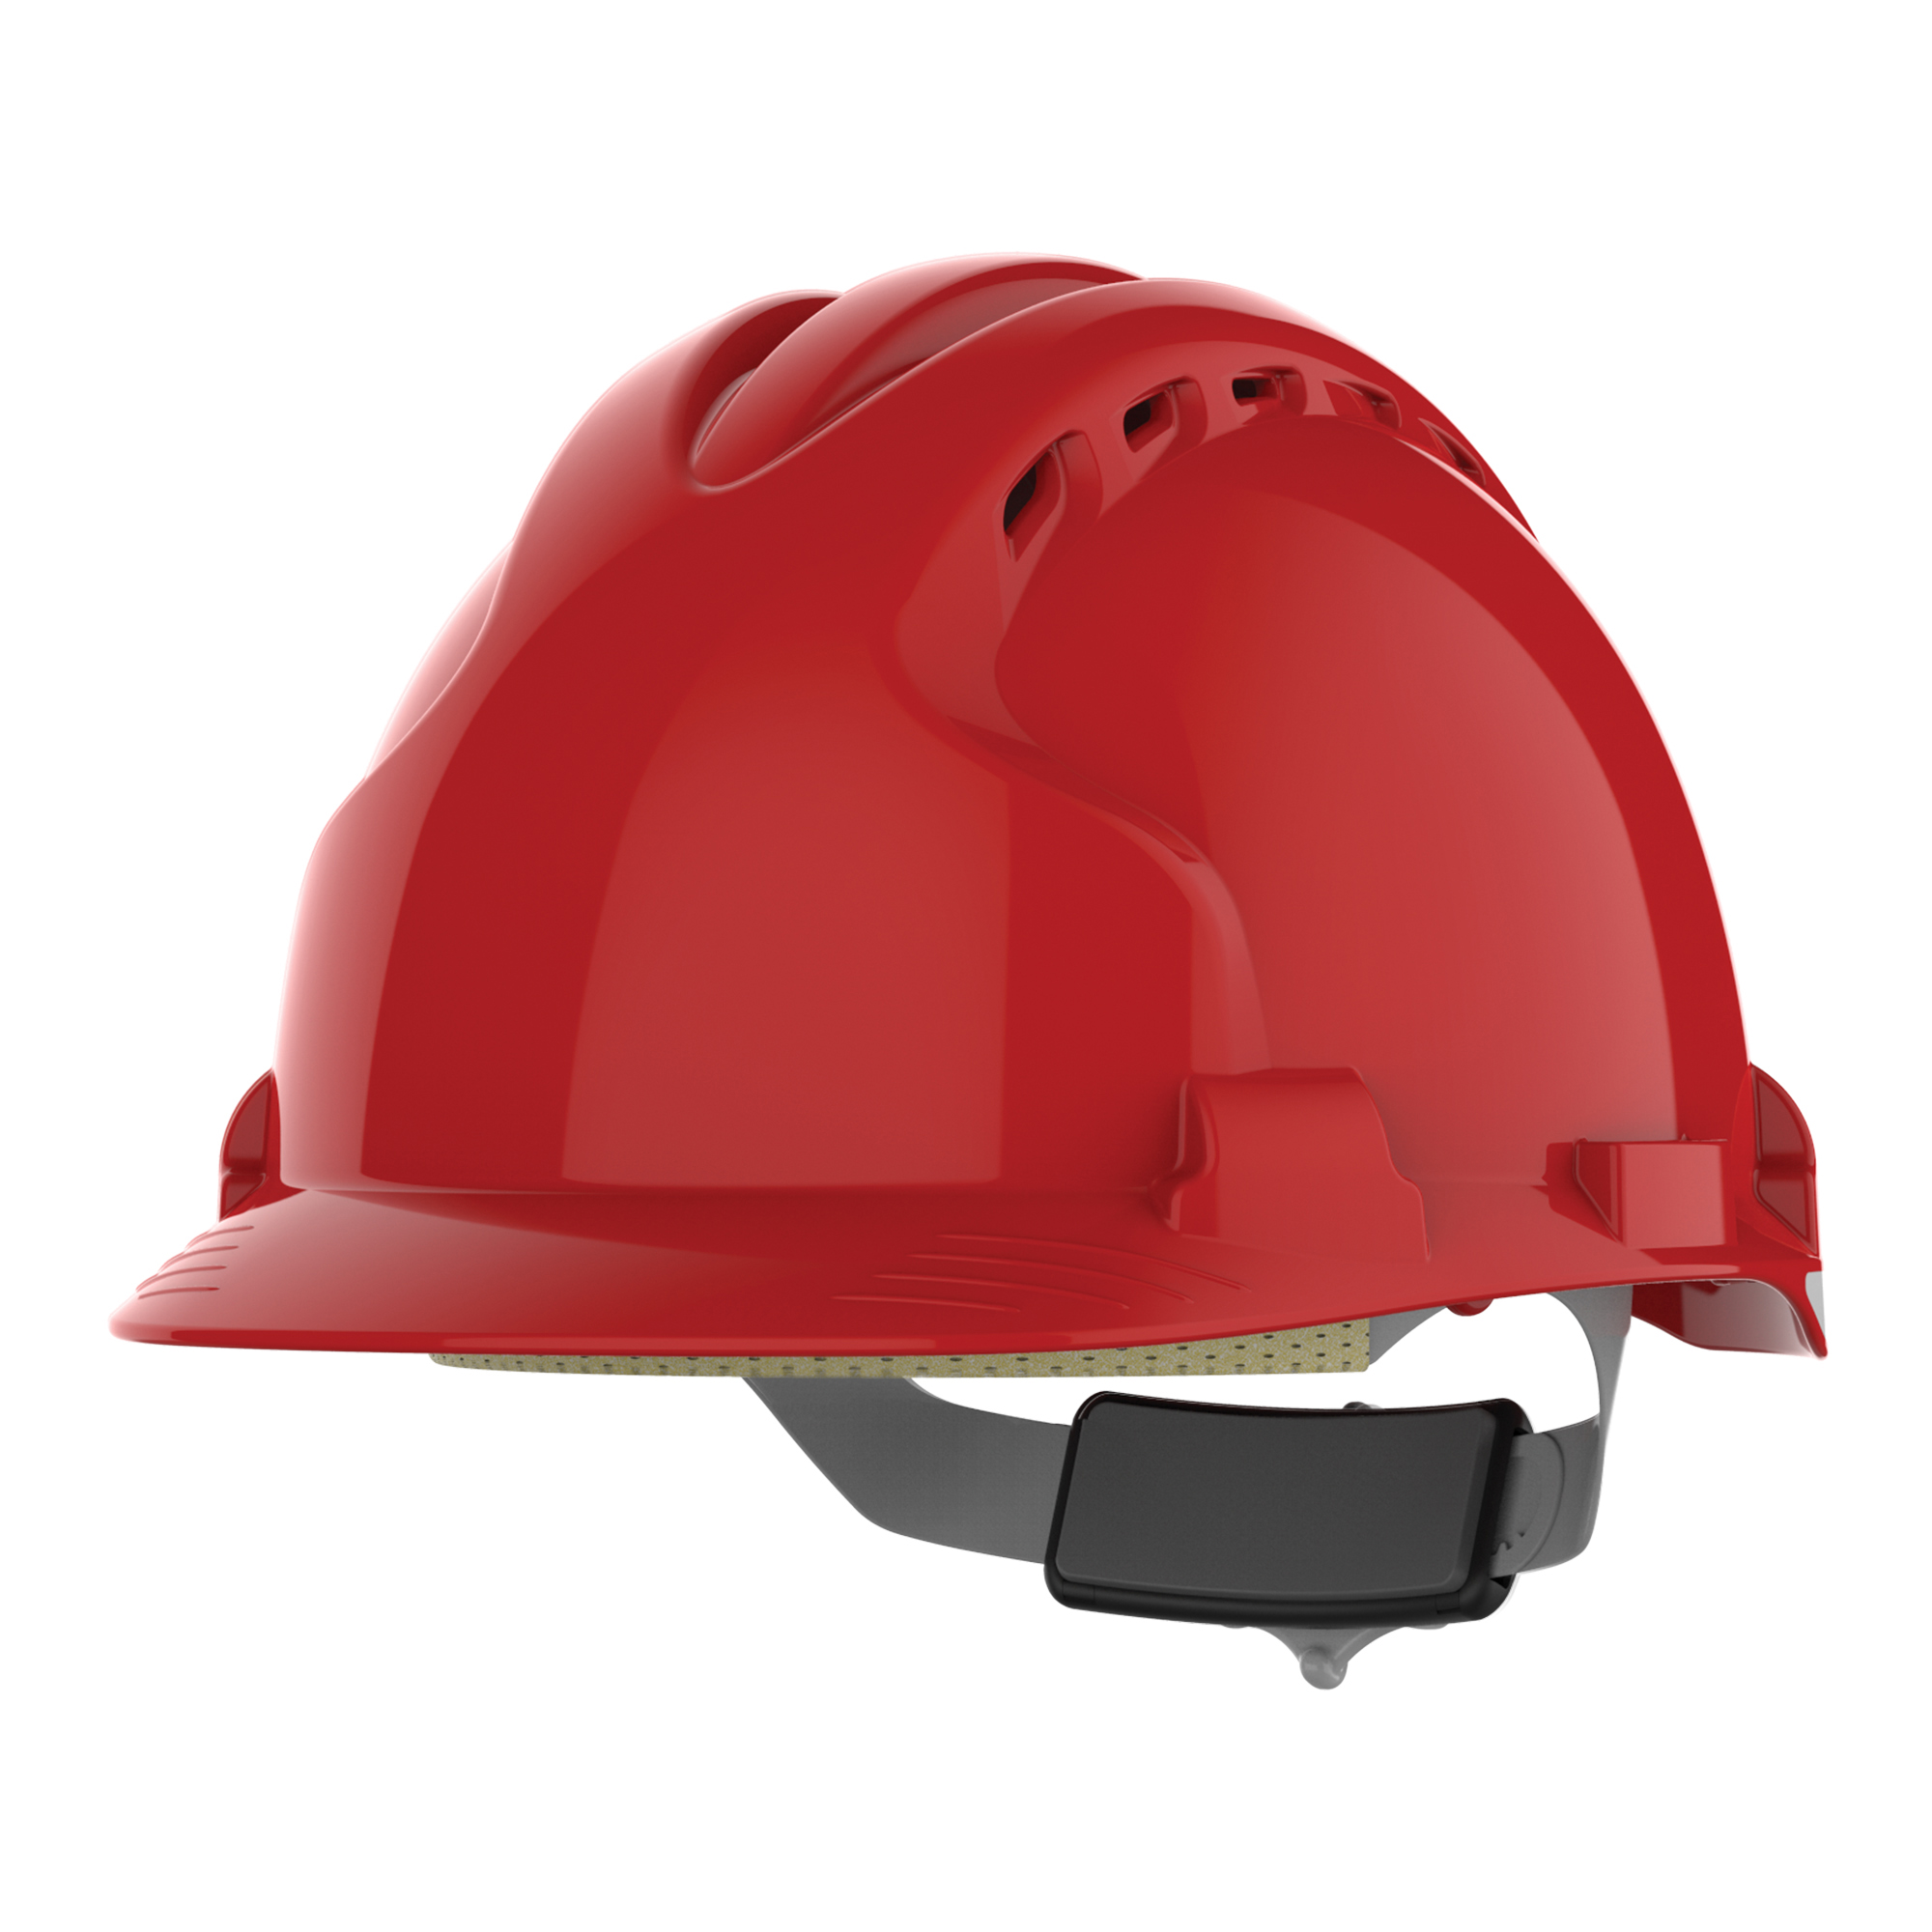 JSP EVO3 premium vented black safety helmet comfort liner standard peak hard hat 